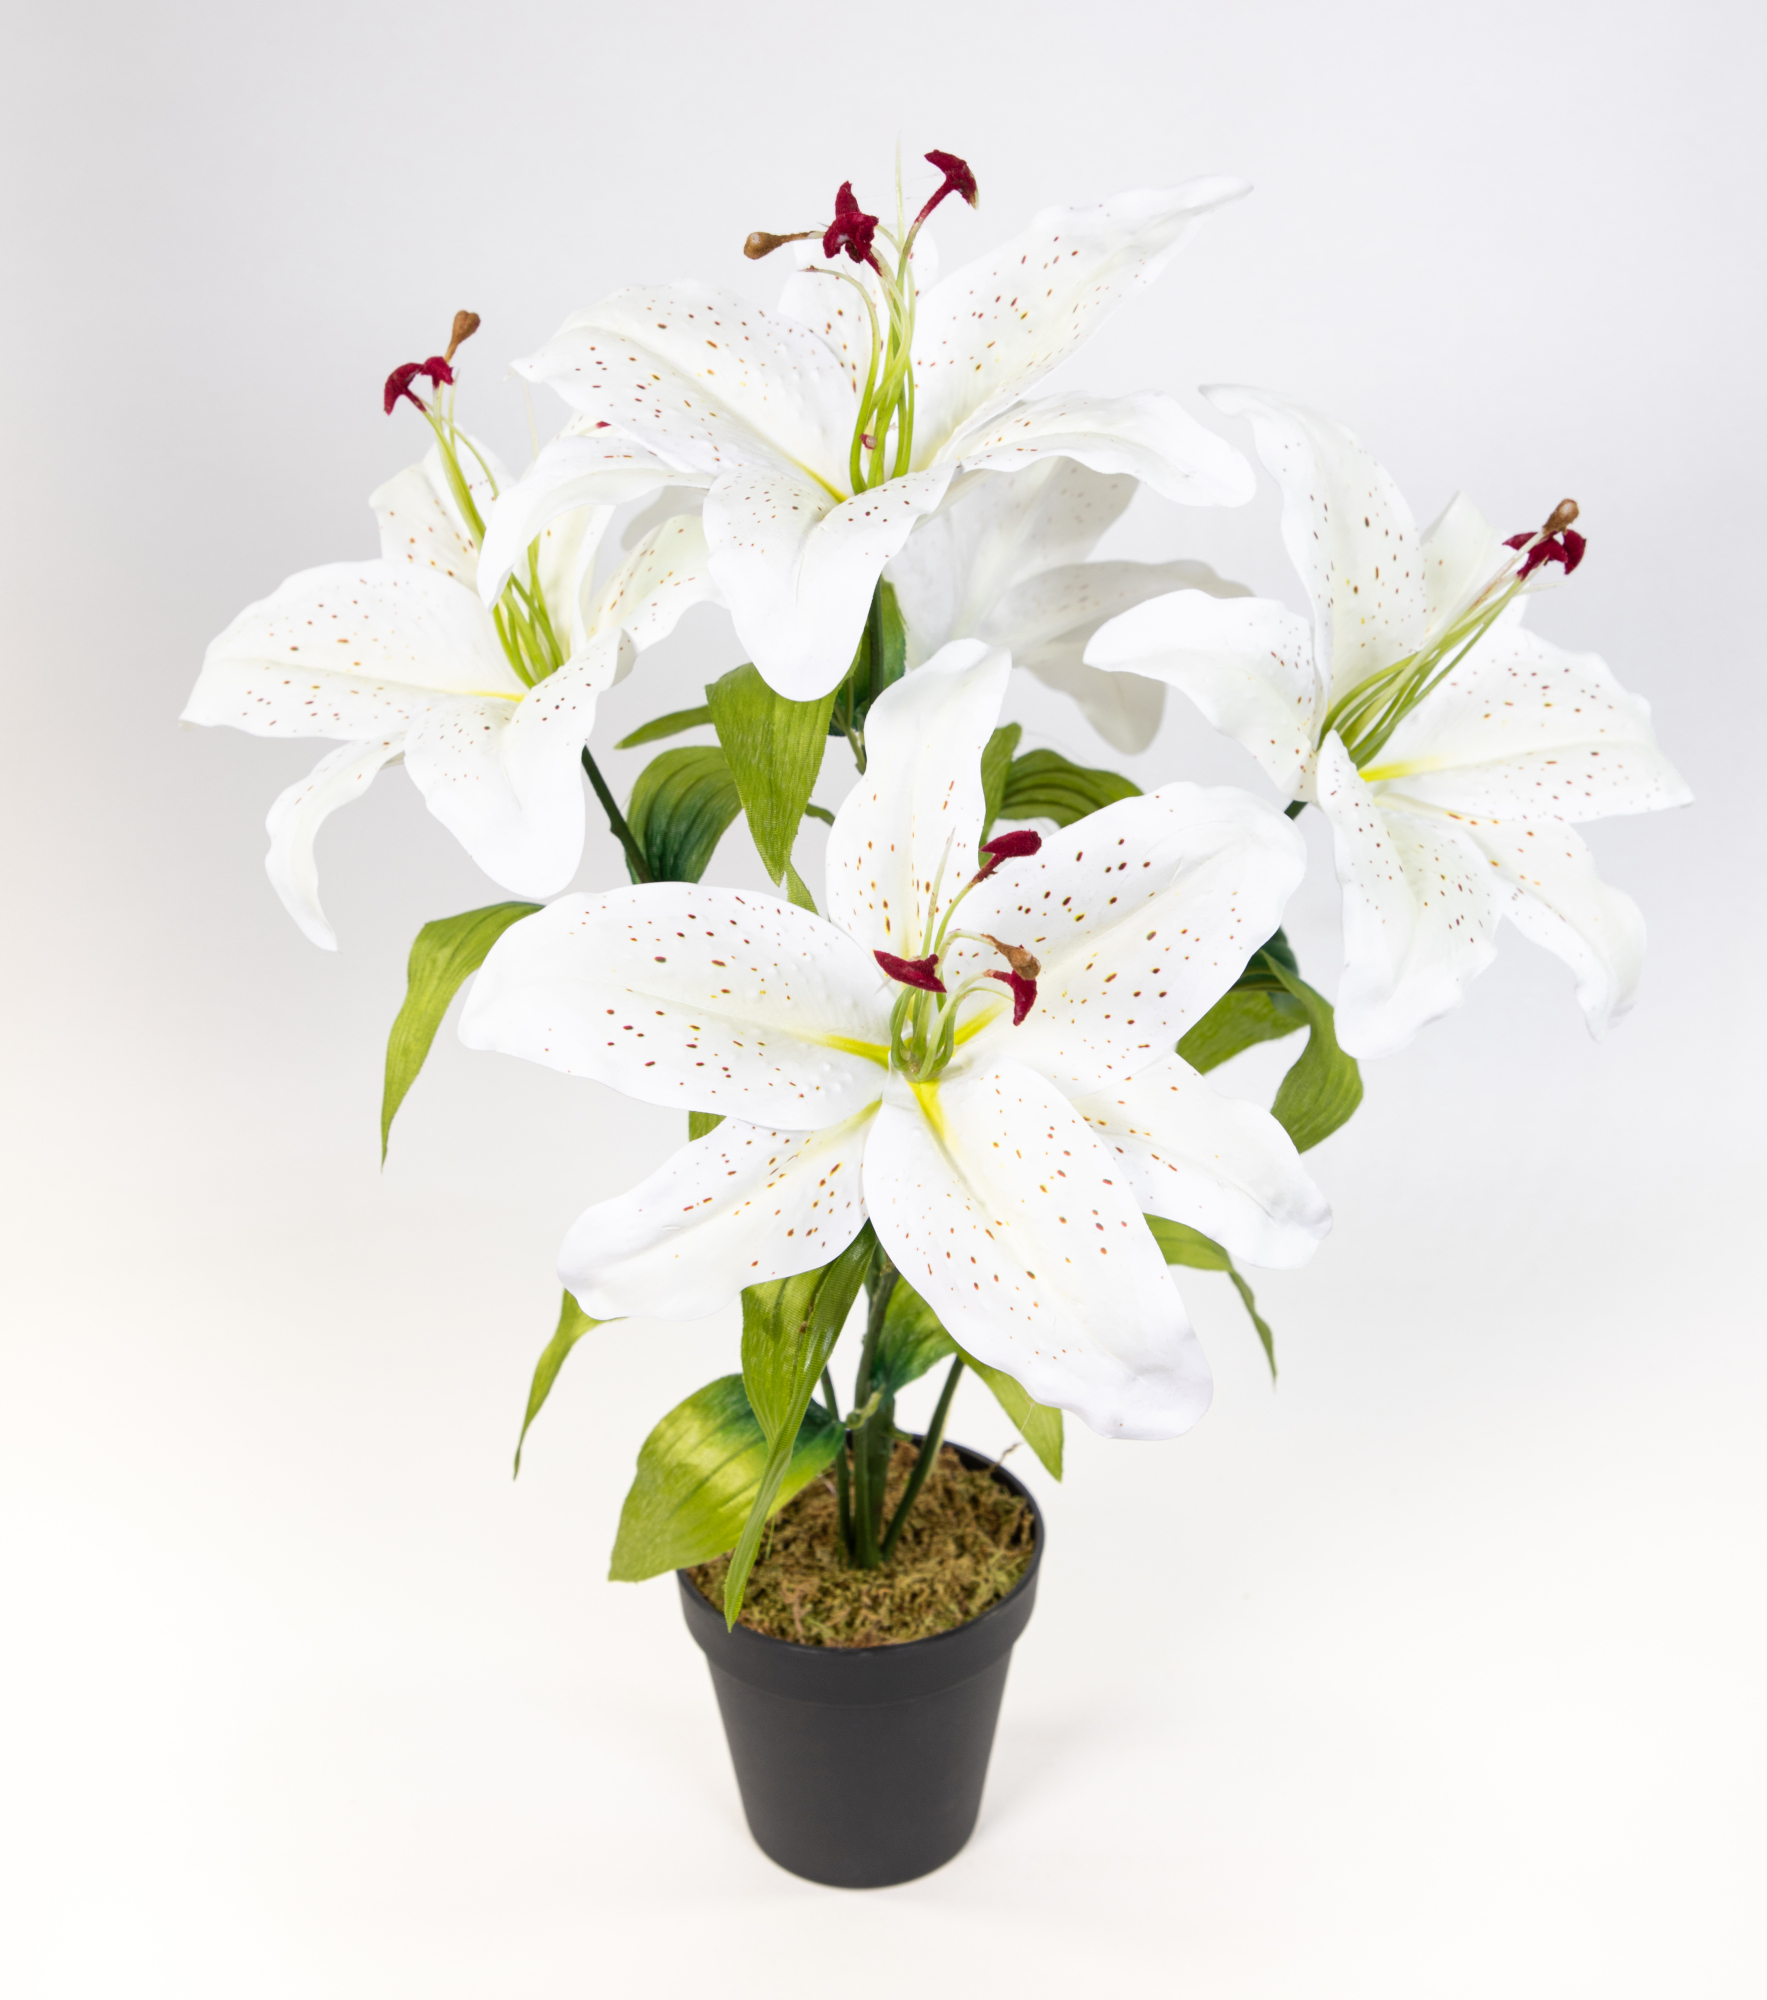 Lilie Real Touch 50cm weiß im Topf DP Kunstblumen Kunstpflanzen künstliche Blumen Pflanze